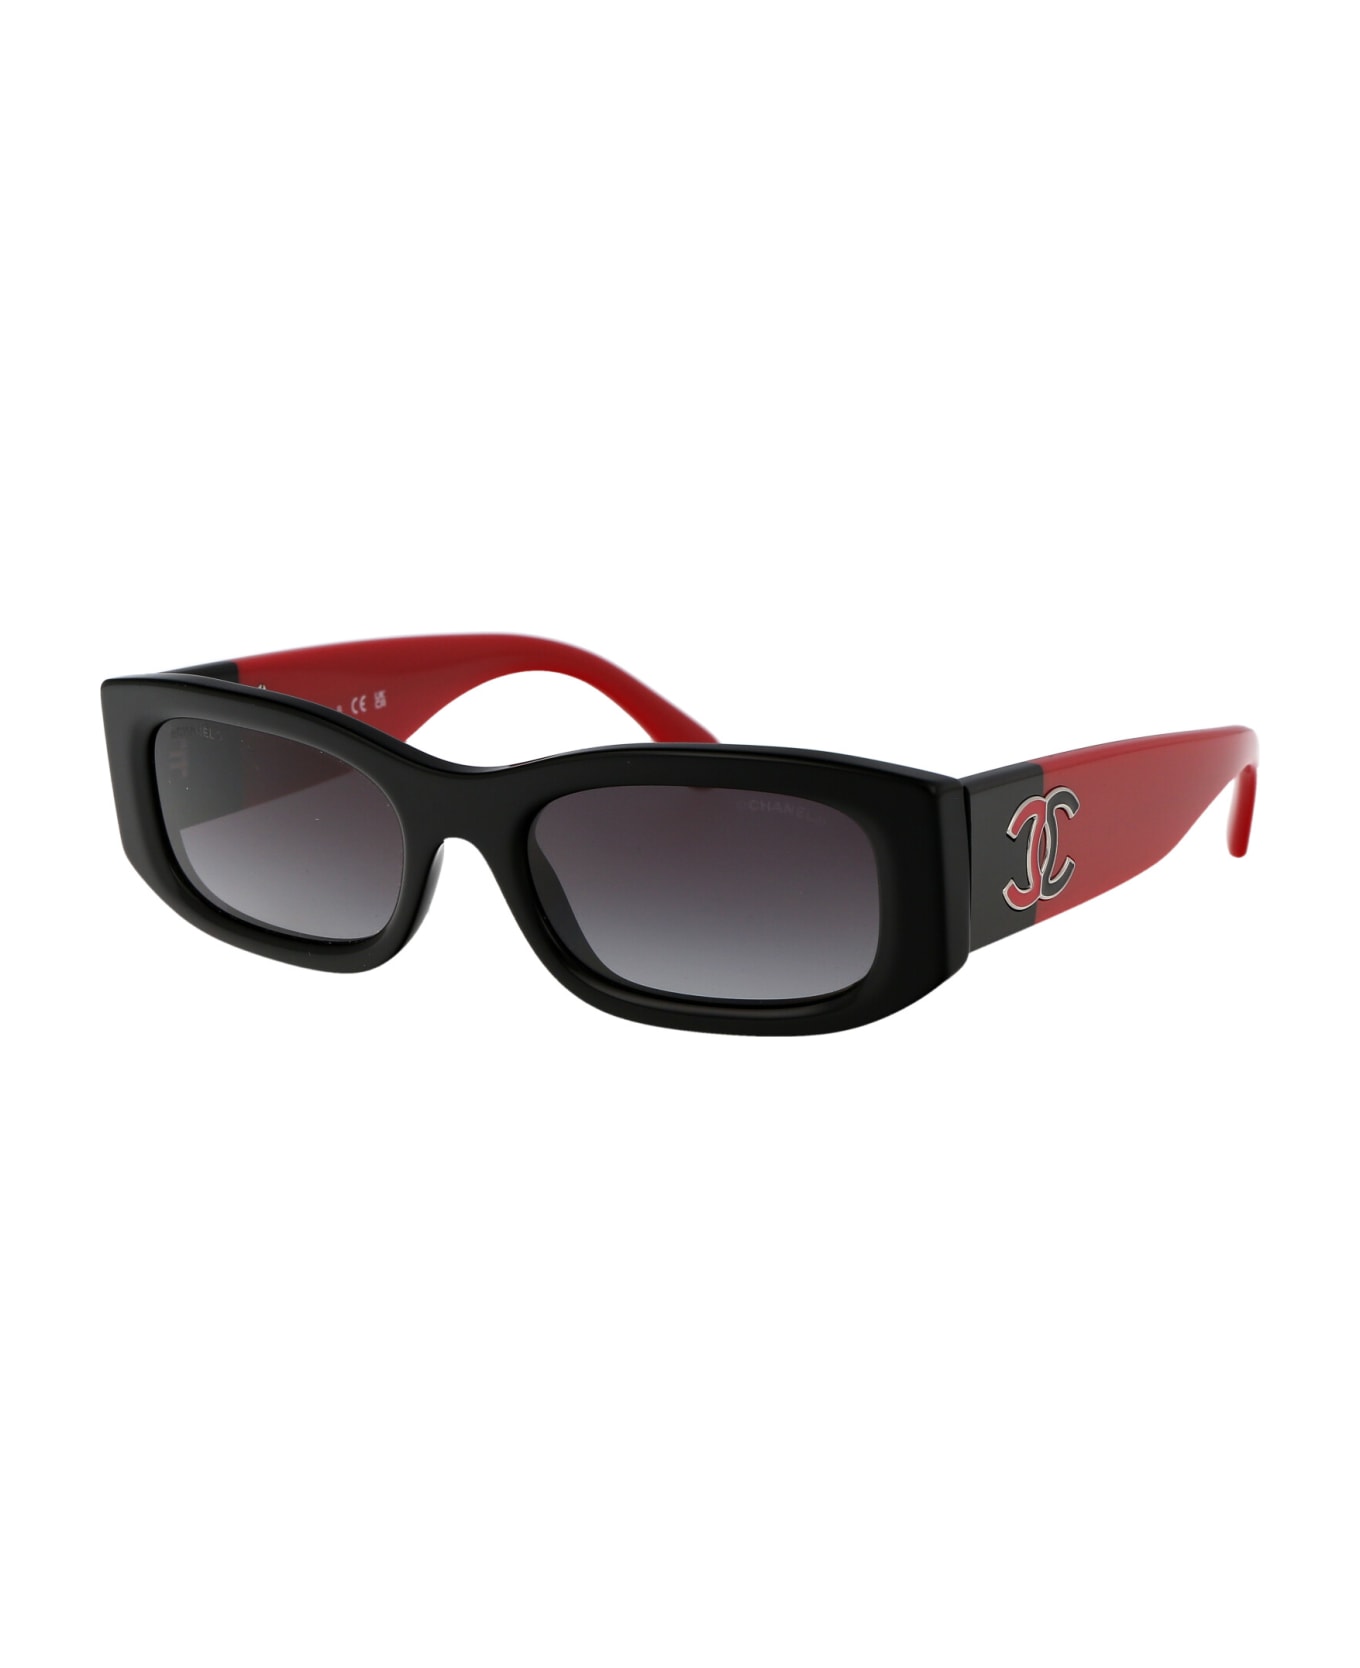 Chanel 0ch5525 Sunglasses - 1771S6 BLACK